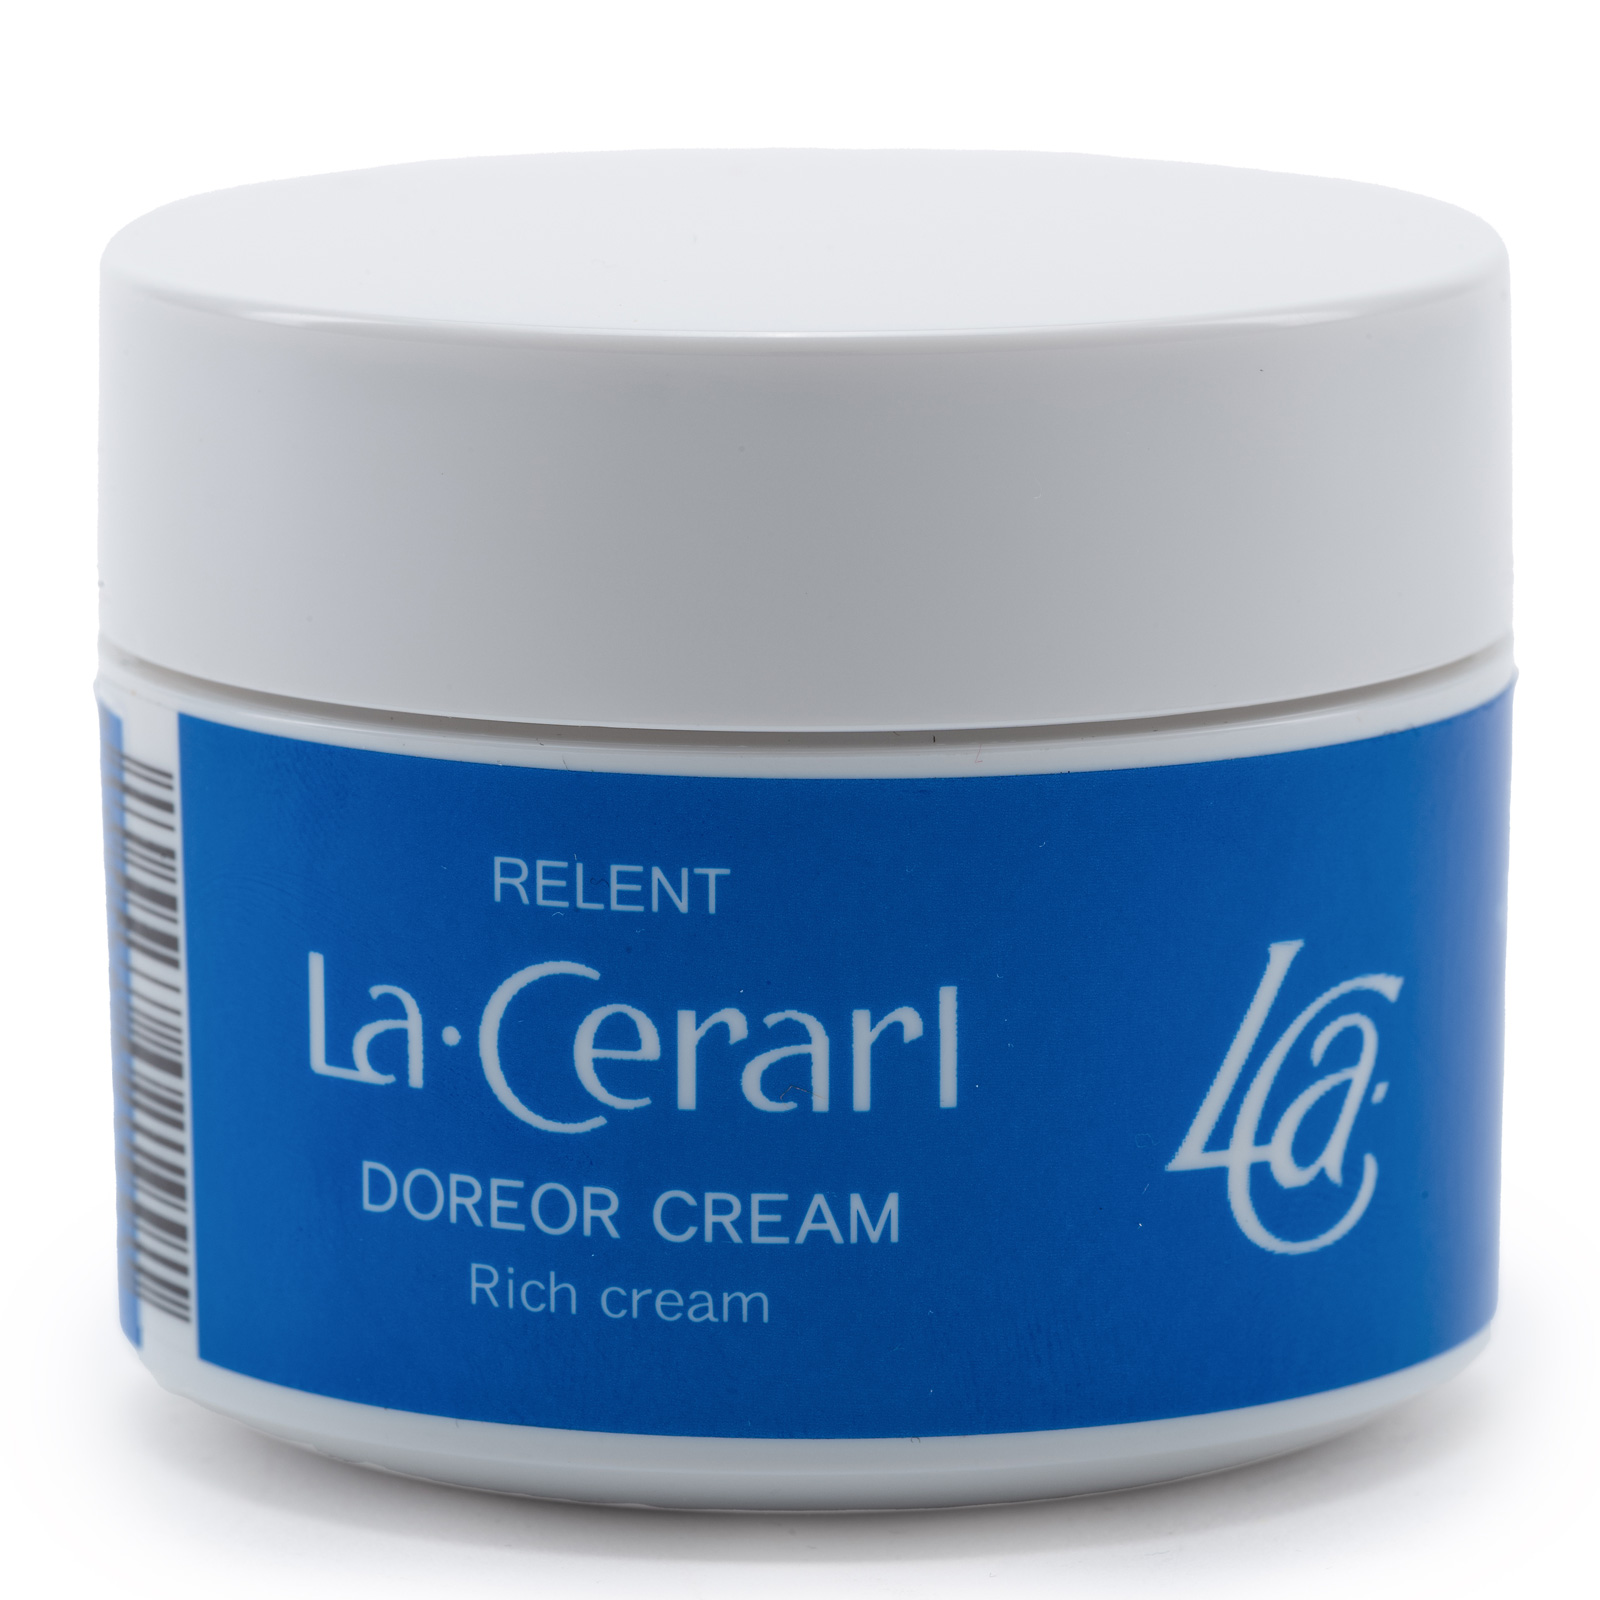 Relent La Cerarl Doreor Cream. Антивозрастной питательный крем для лица с витамином С Ла Сераль Дореор, 100 г